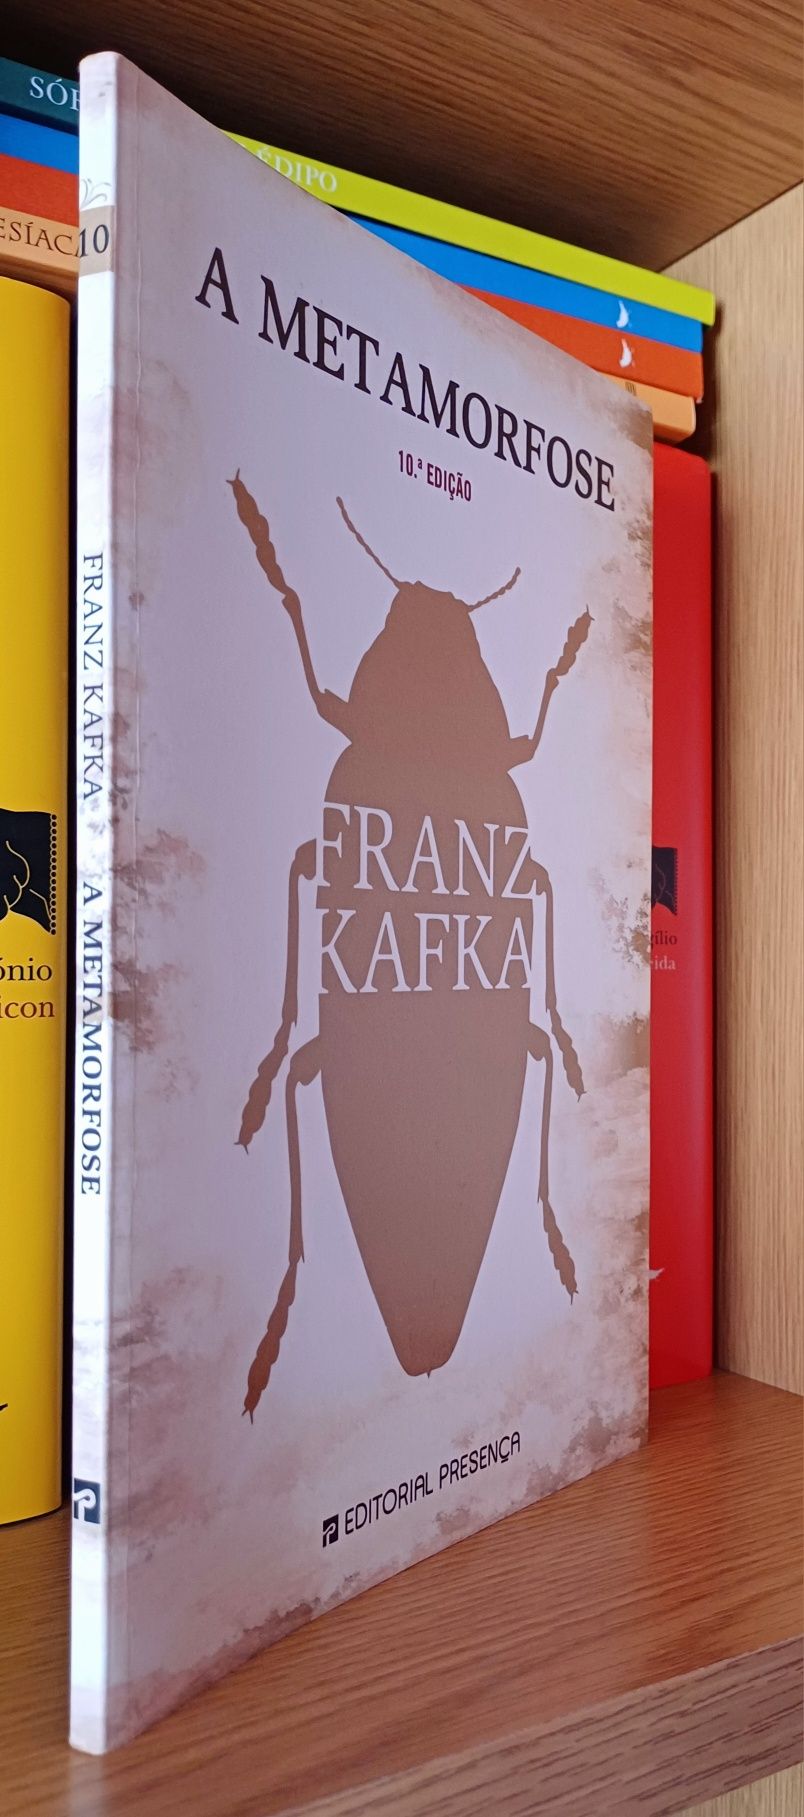 Livro "A Metamorfose", de Franz Kafka